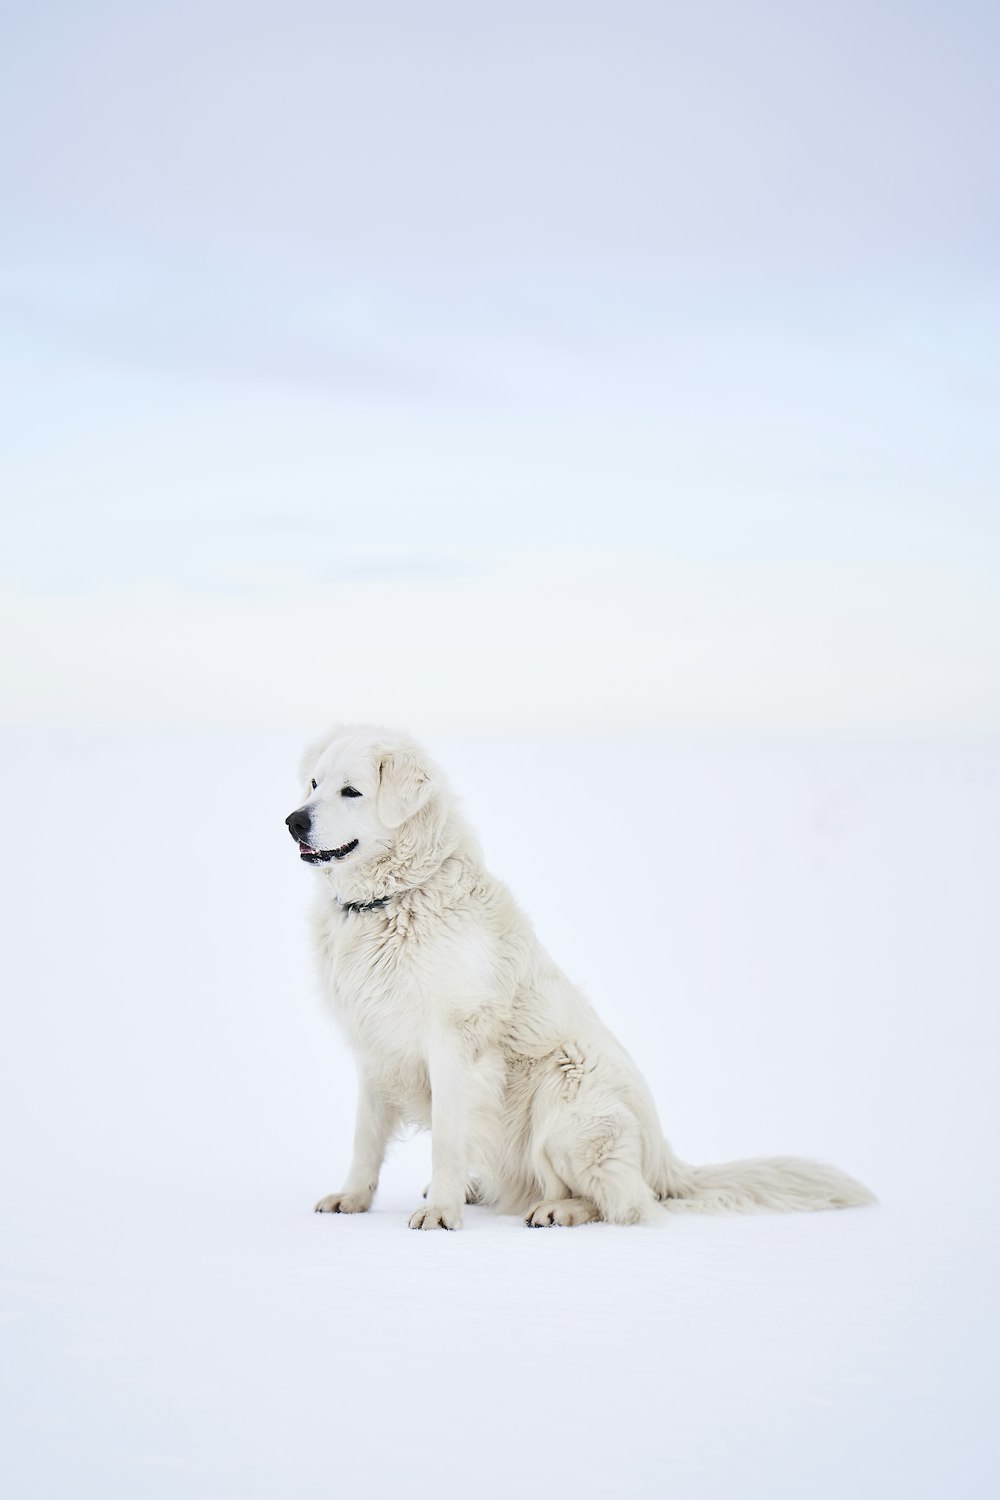 white long coat dog sitting on snow